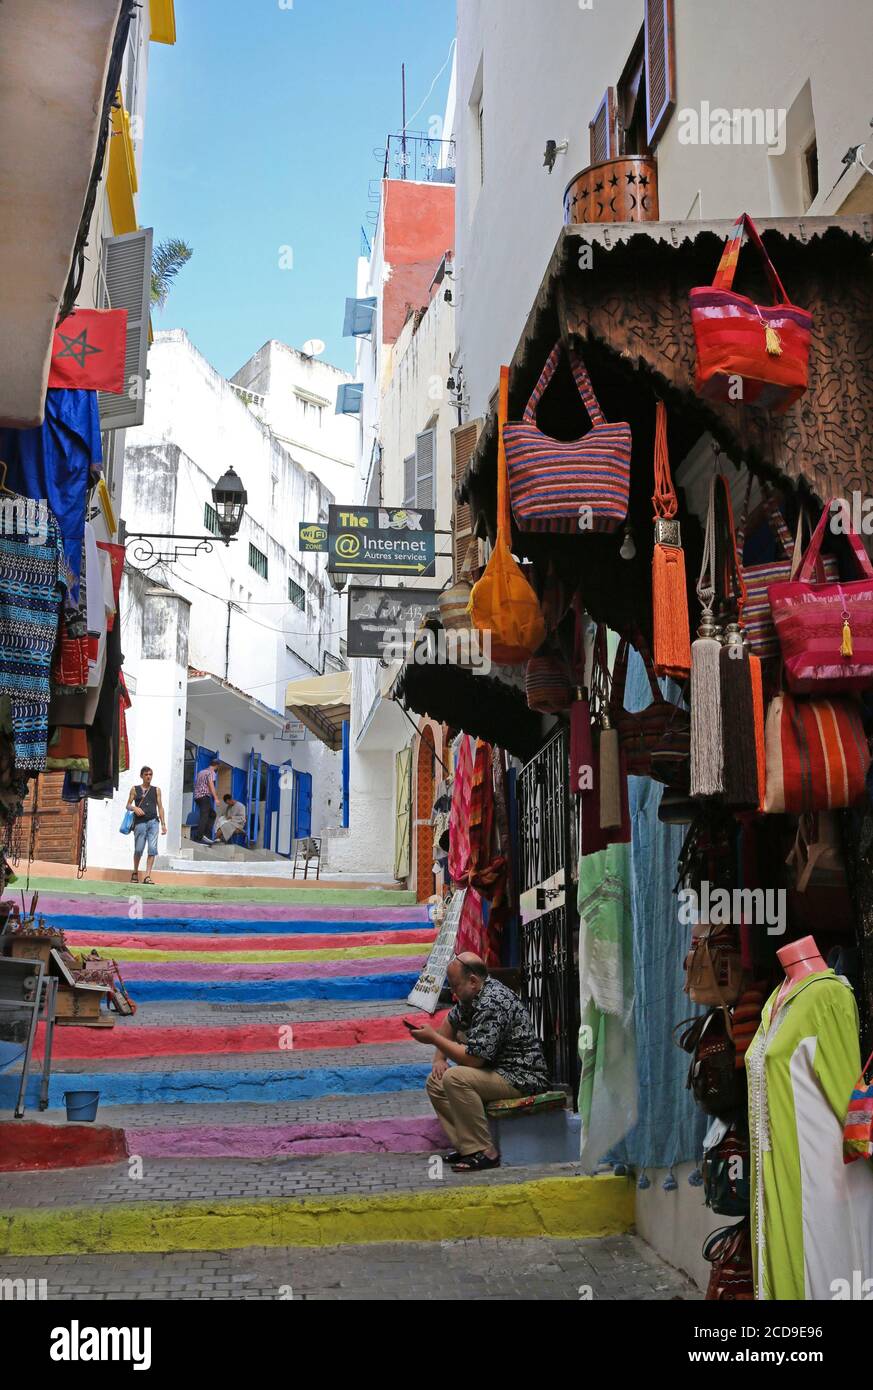 Marocco, Tangeri Tetouan regione, Tangeri, scala con scale multicolore in un vicolo della medina fiancheggiata da negozi di artigianato marocchino Foto Stock